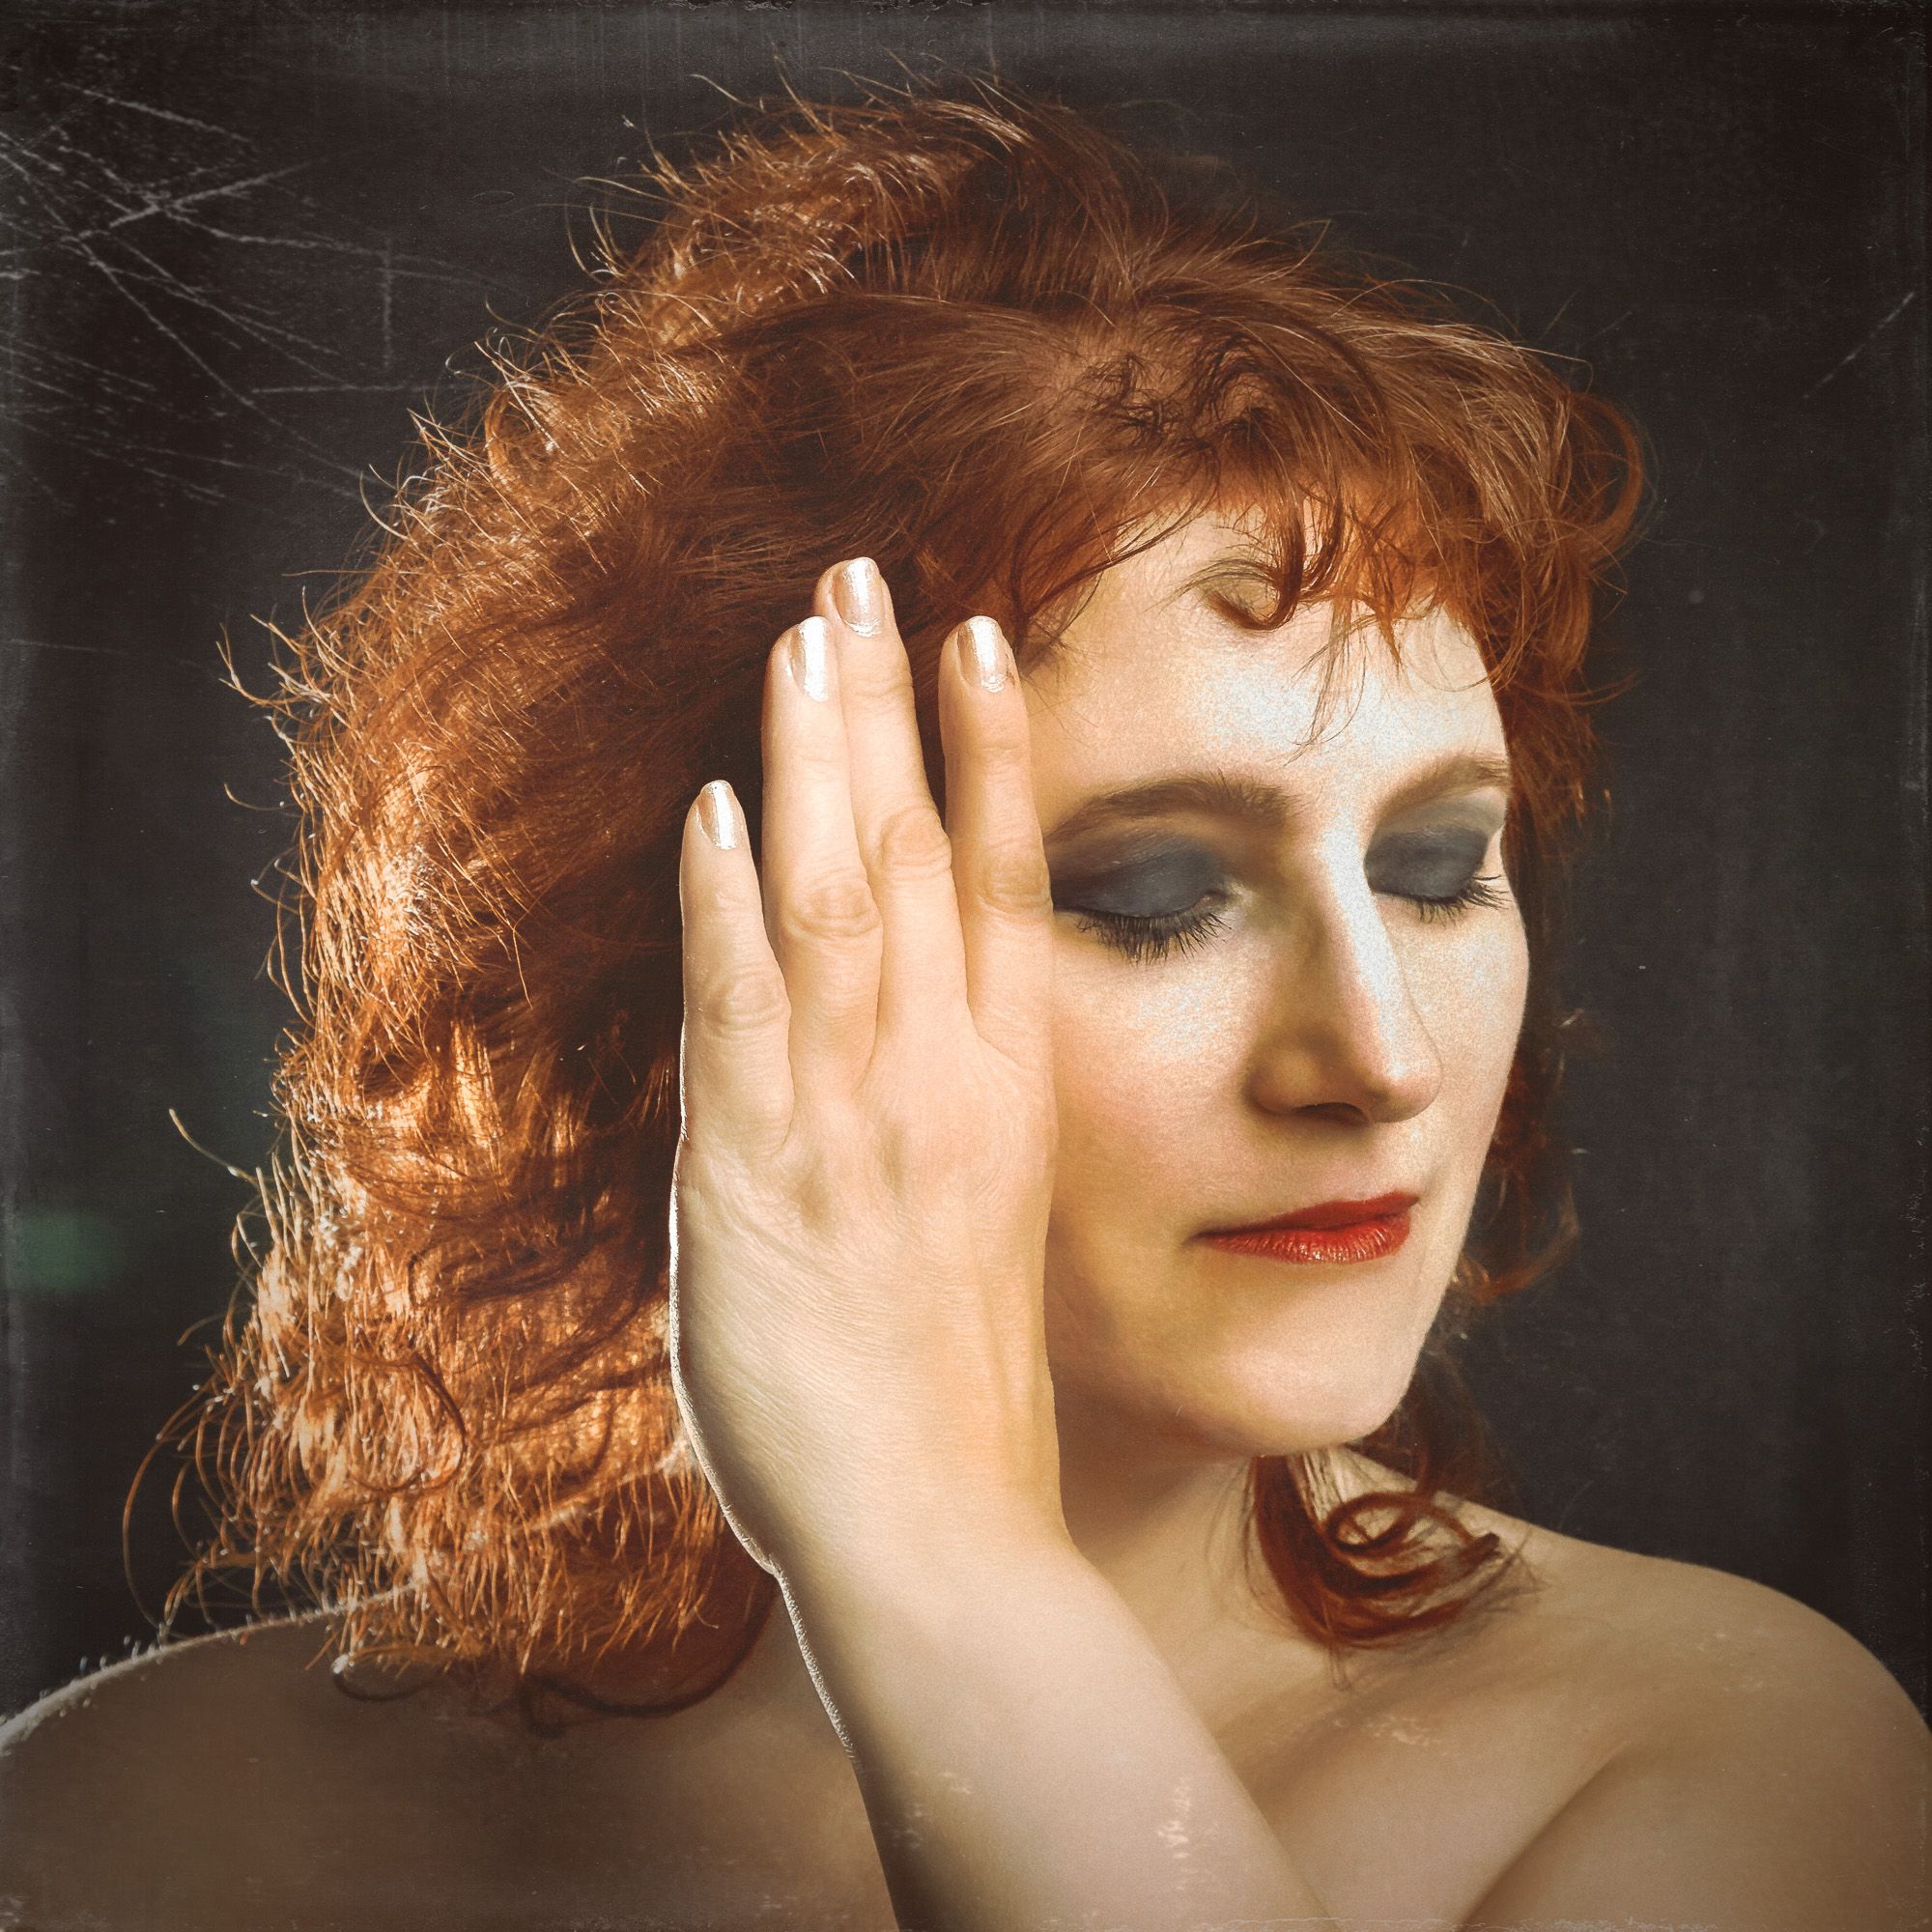 Michaela Portrait Hand (photograph by Roman Drahosz)